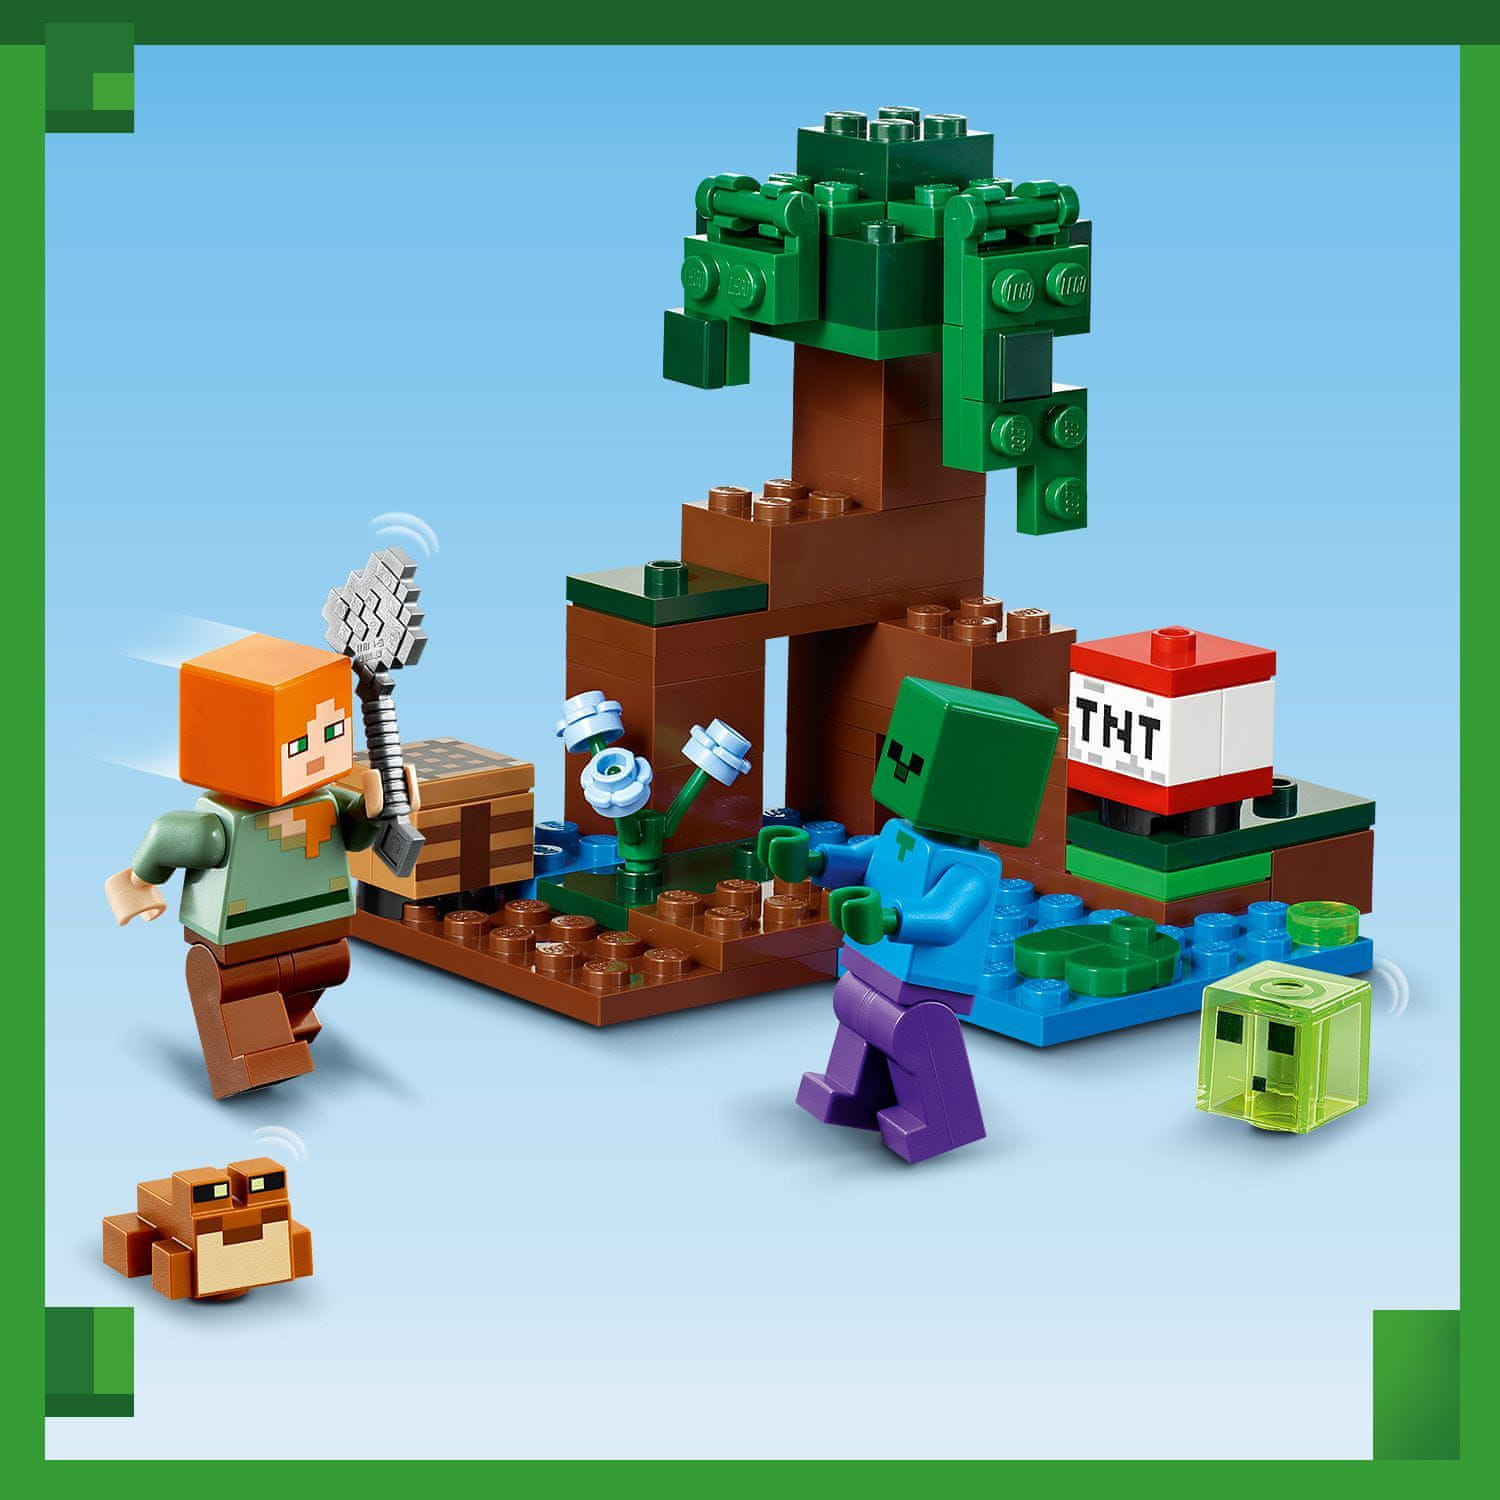 LEGO Minecraft 21240 Dobrodružství v bažině